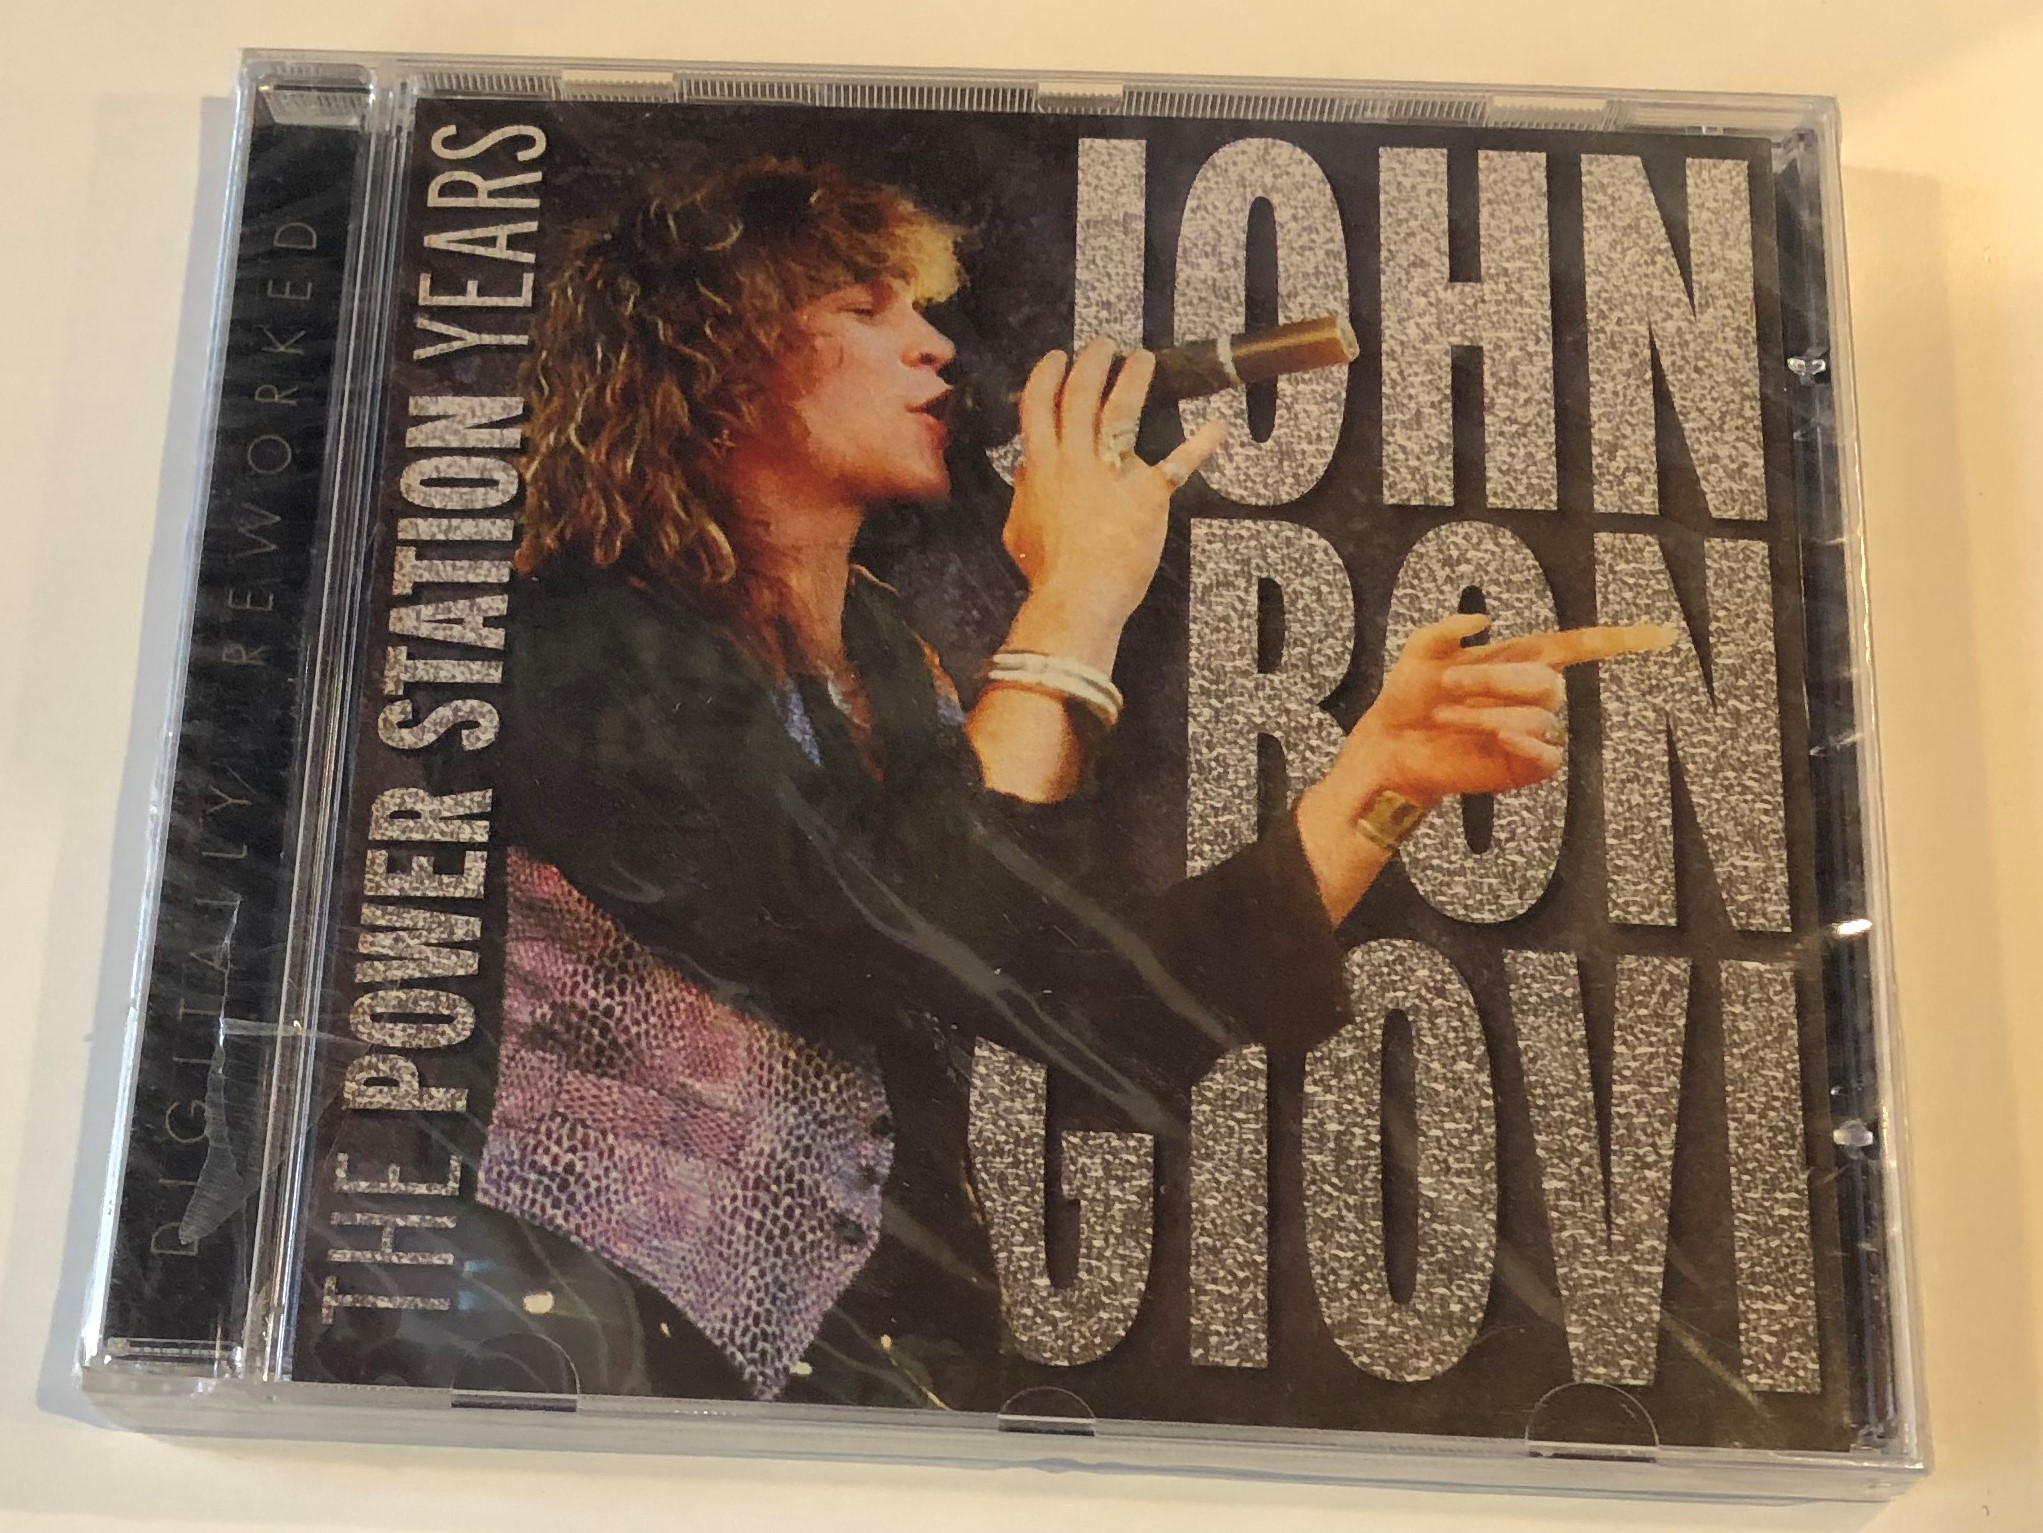 john-bon-giovi-the-power-station-years-audio-cd-stereo-cd-157-1-.jpg